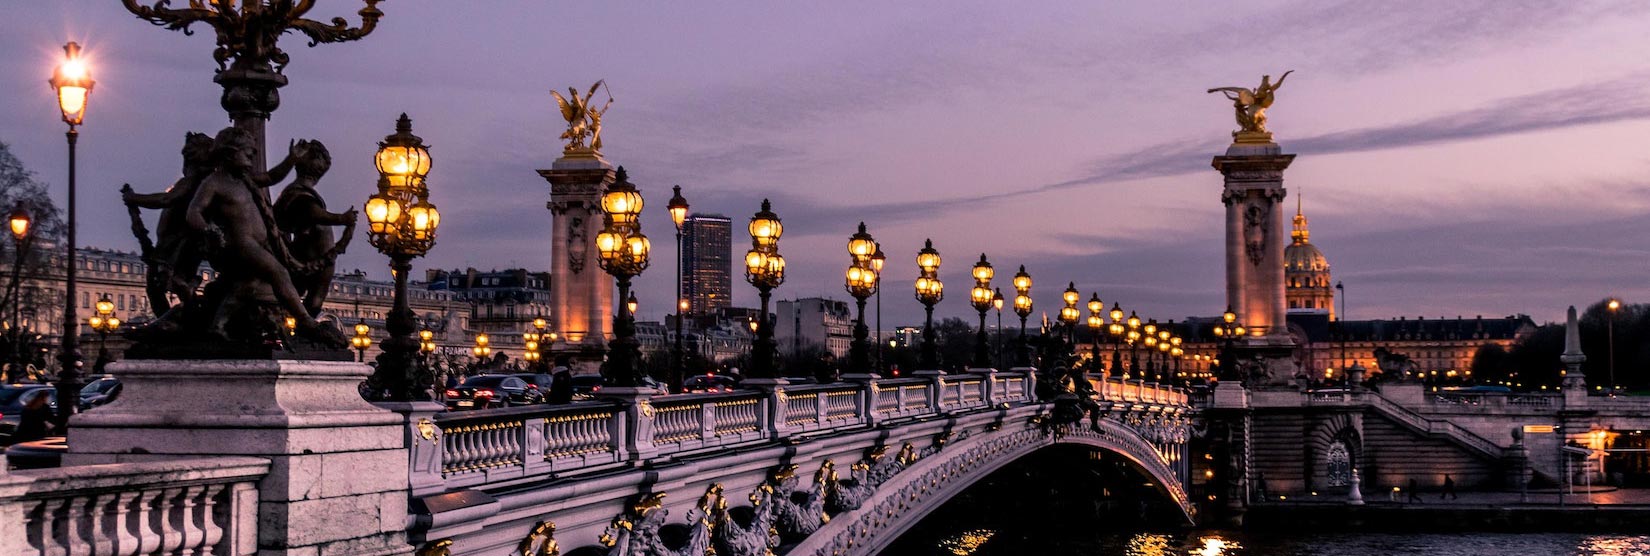 Pont Alexandre III Ponte Paris, França